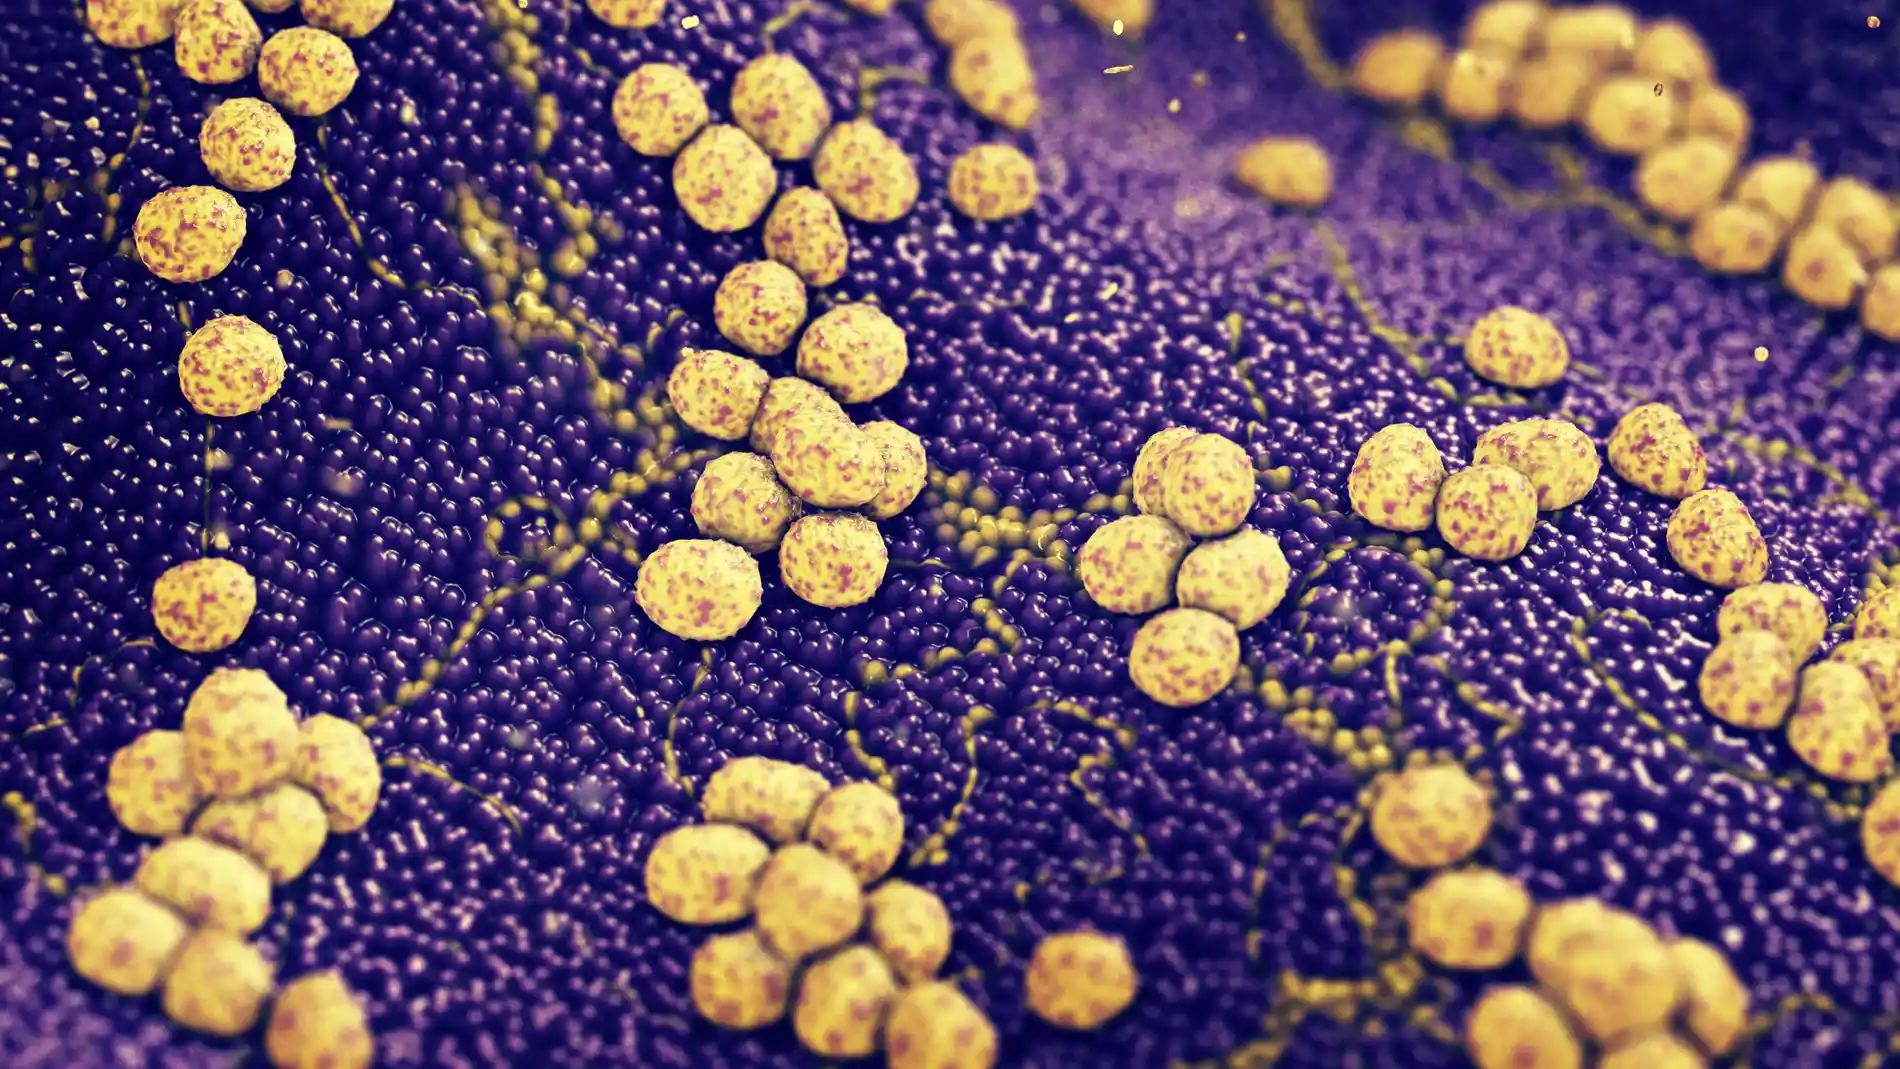 Colonia de bacterias Staphylococcus aureus causantes de infecciones cutáneas